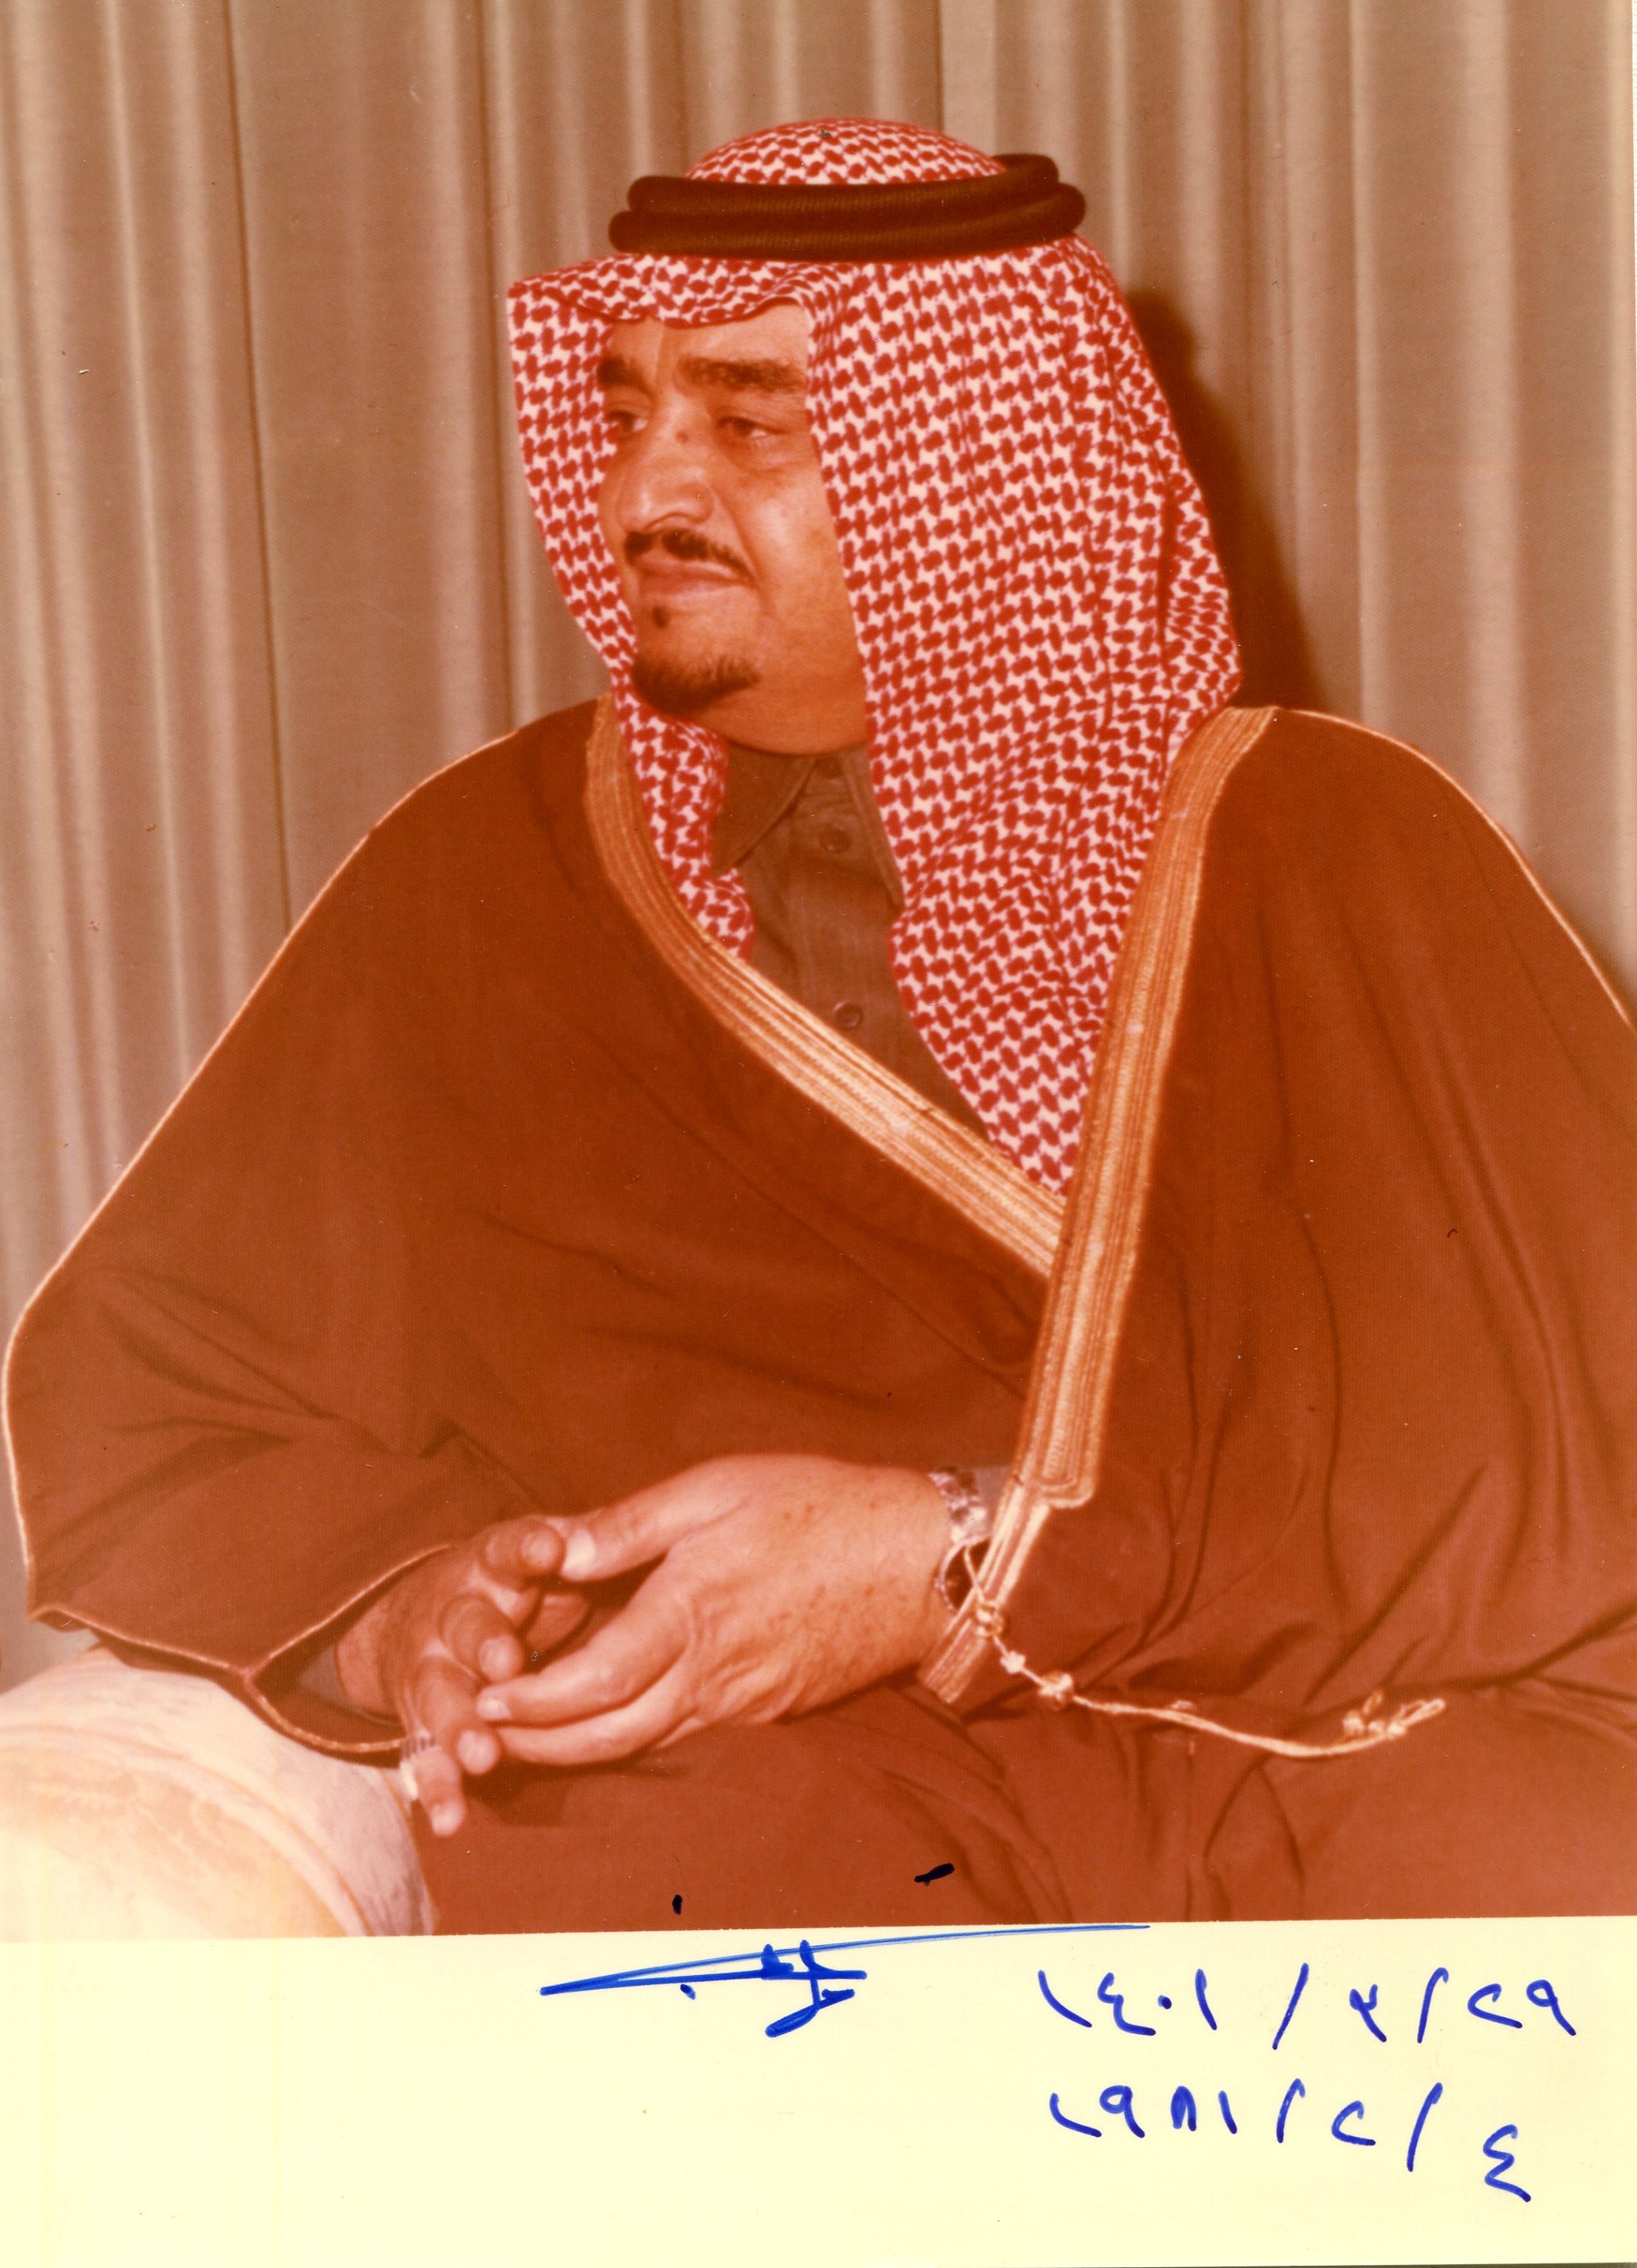 KING FAHD OF SAUDI ARABIA: (1921-2005) King of Saudi Arabia 1982-2005.